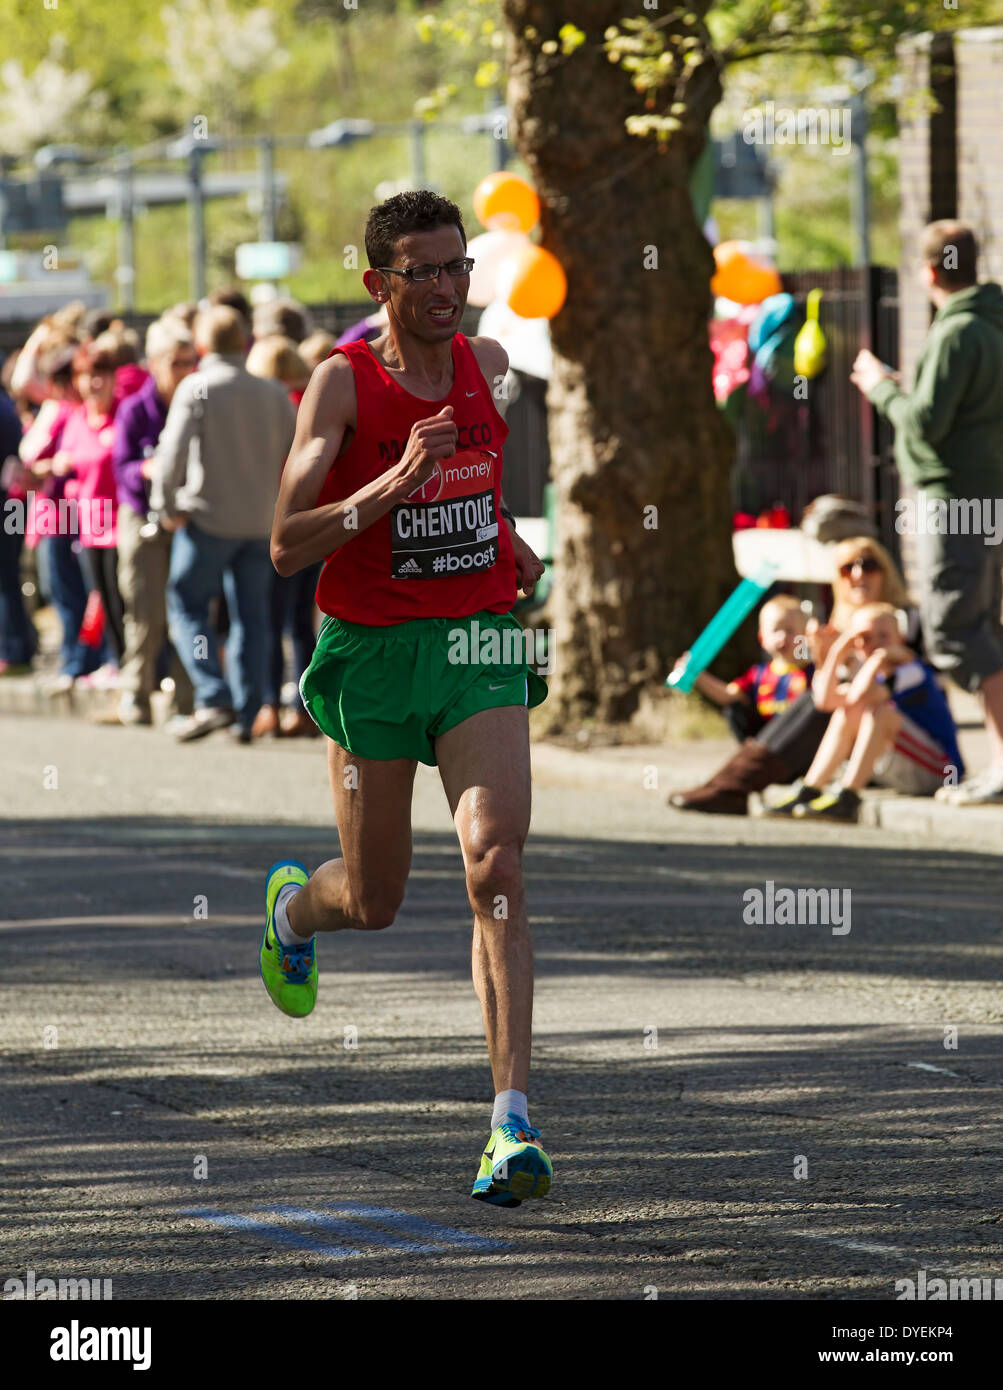 El Amin Chentouf sur le chemin de gagner sa classe T11/T13 au Marathon de Londres 2014, Angleterre, Royaume-Uni. Banque D'Images